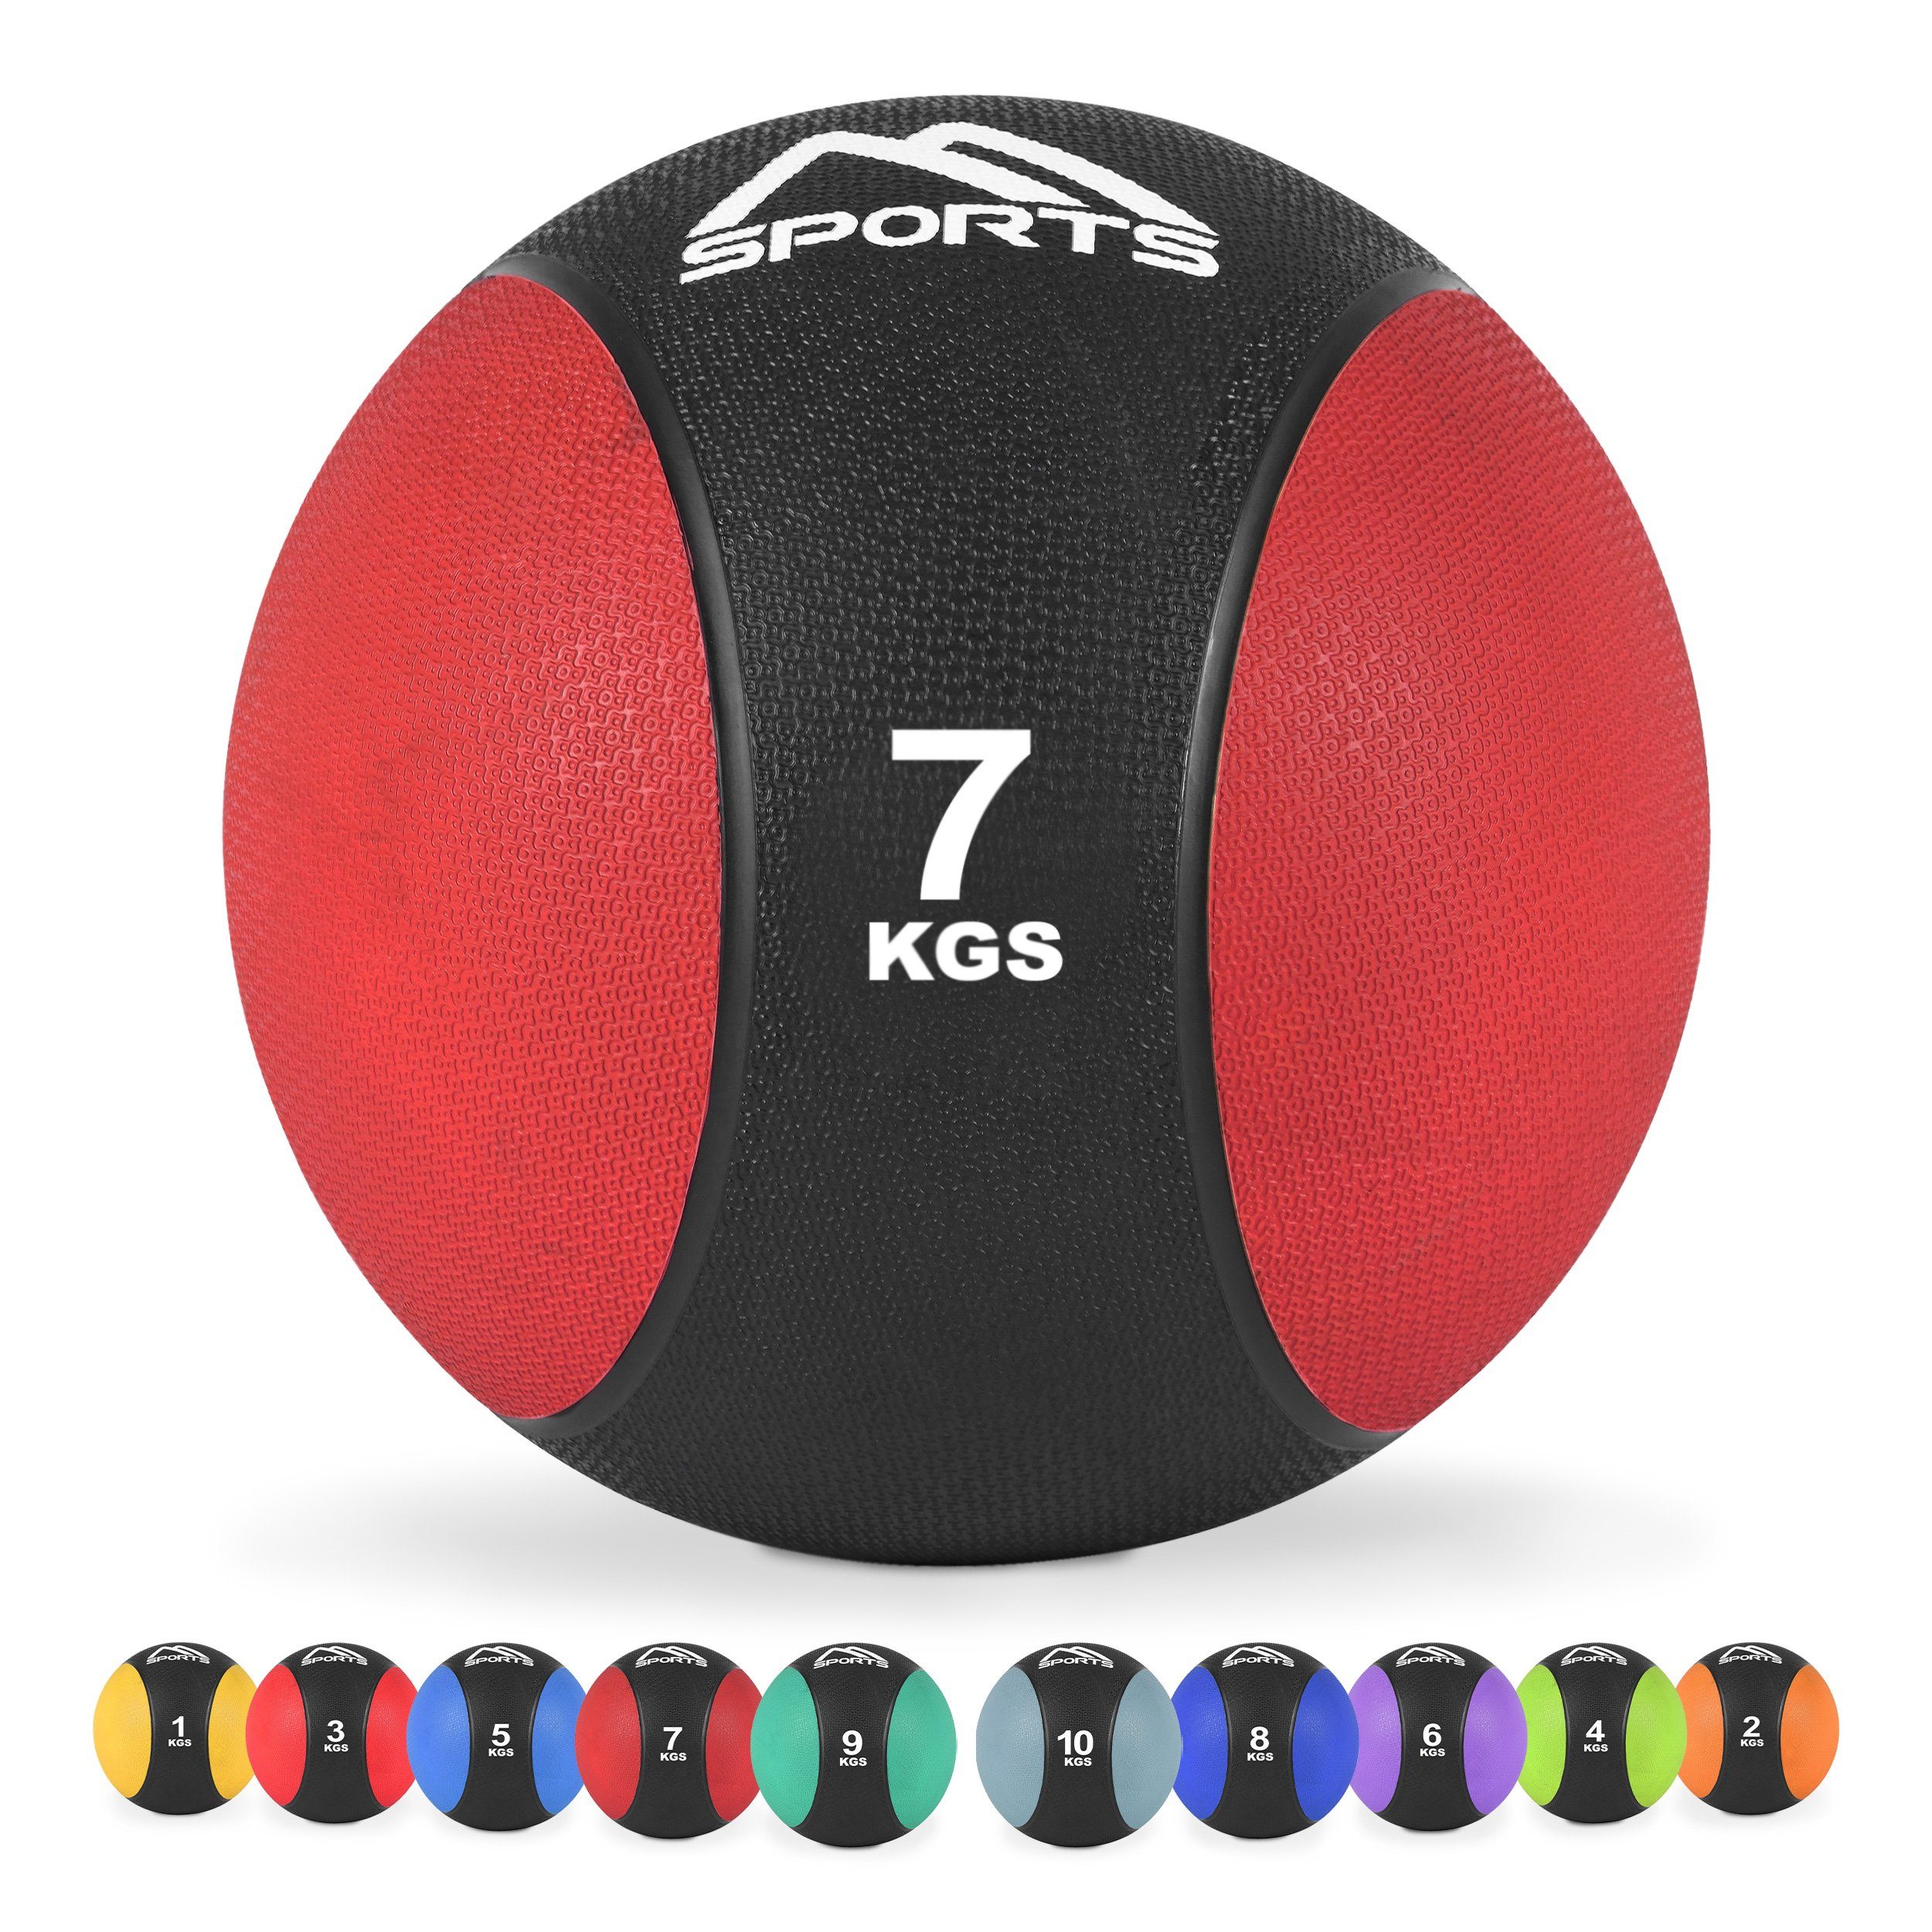 Übungsposter – - kg 1 7 Rot inkl. MSports® Medizinball kg Medizinball 10 –